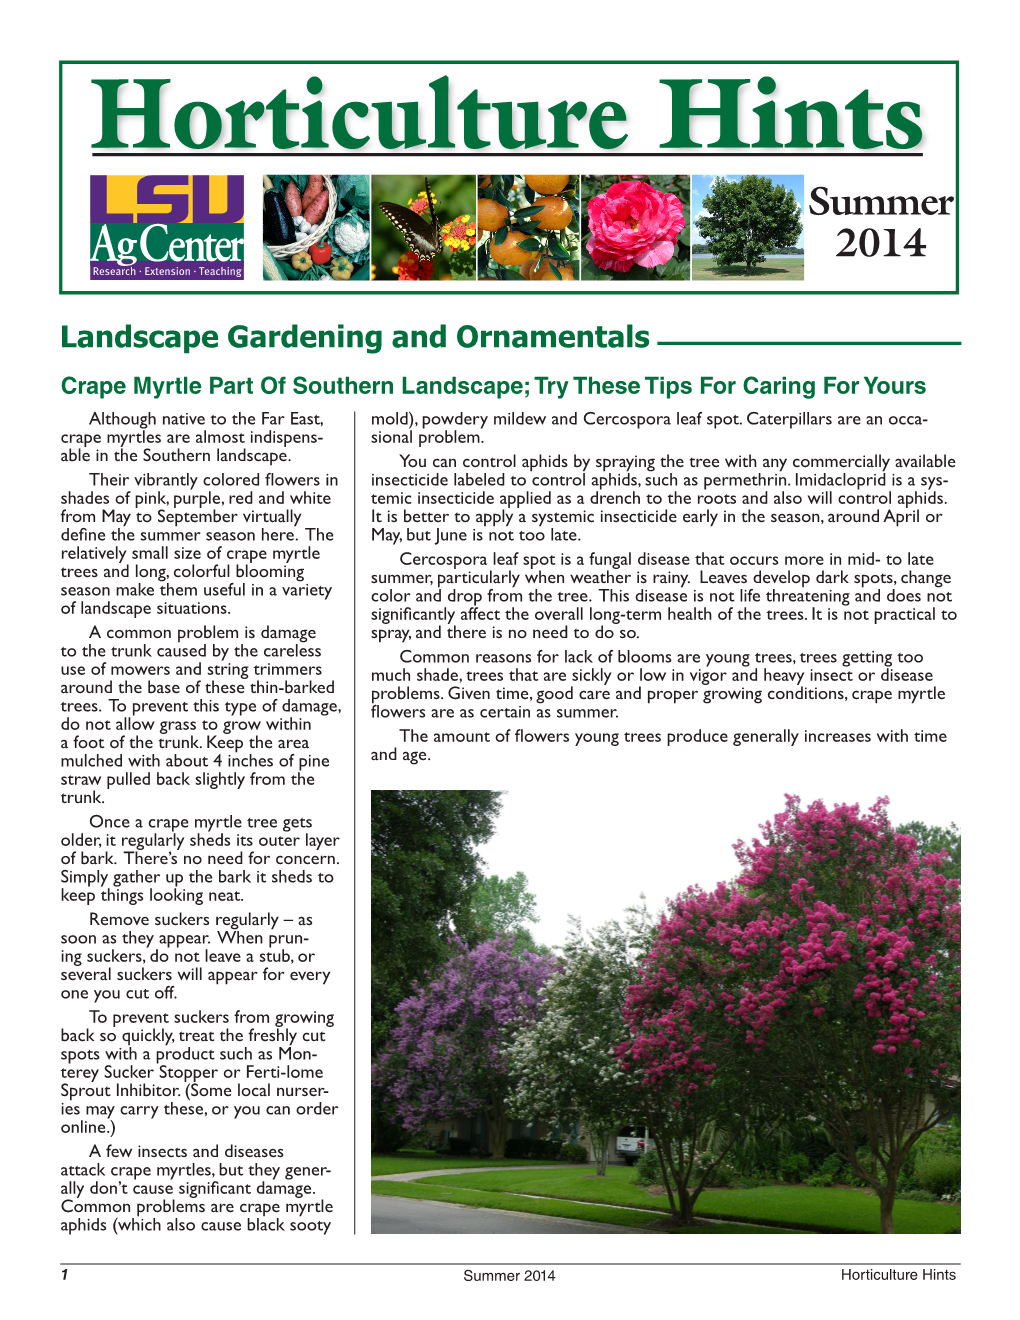 Horticulture Hints Summer 2014